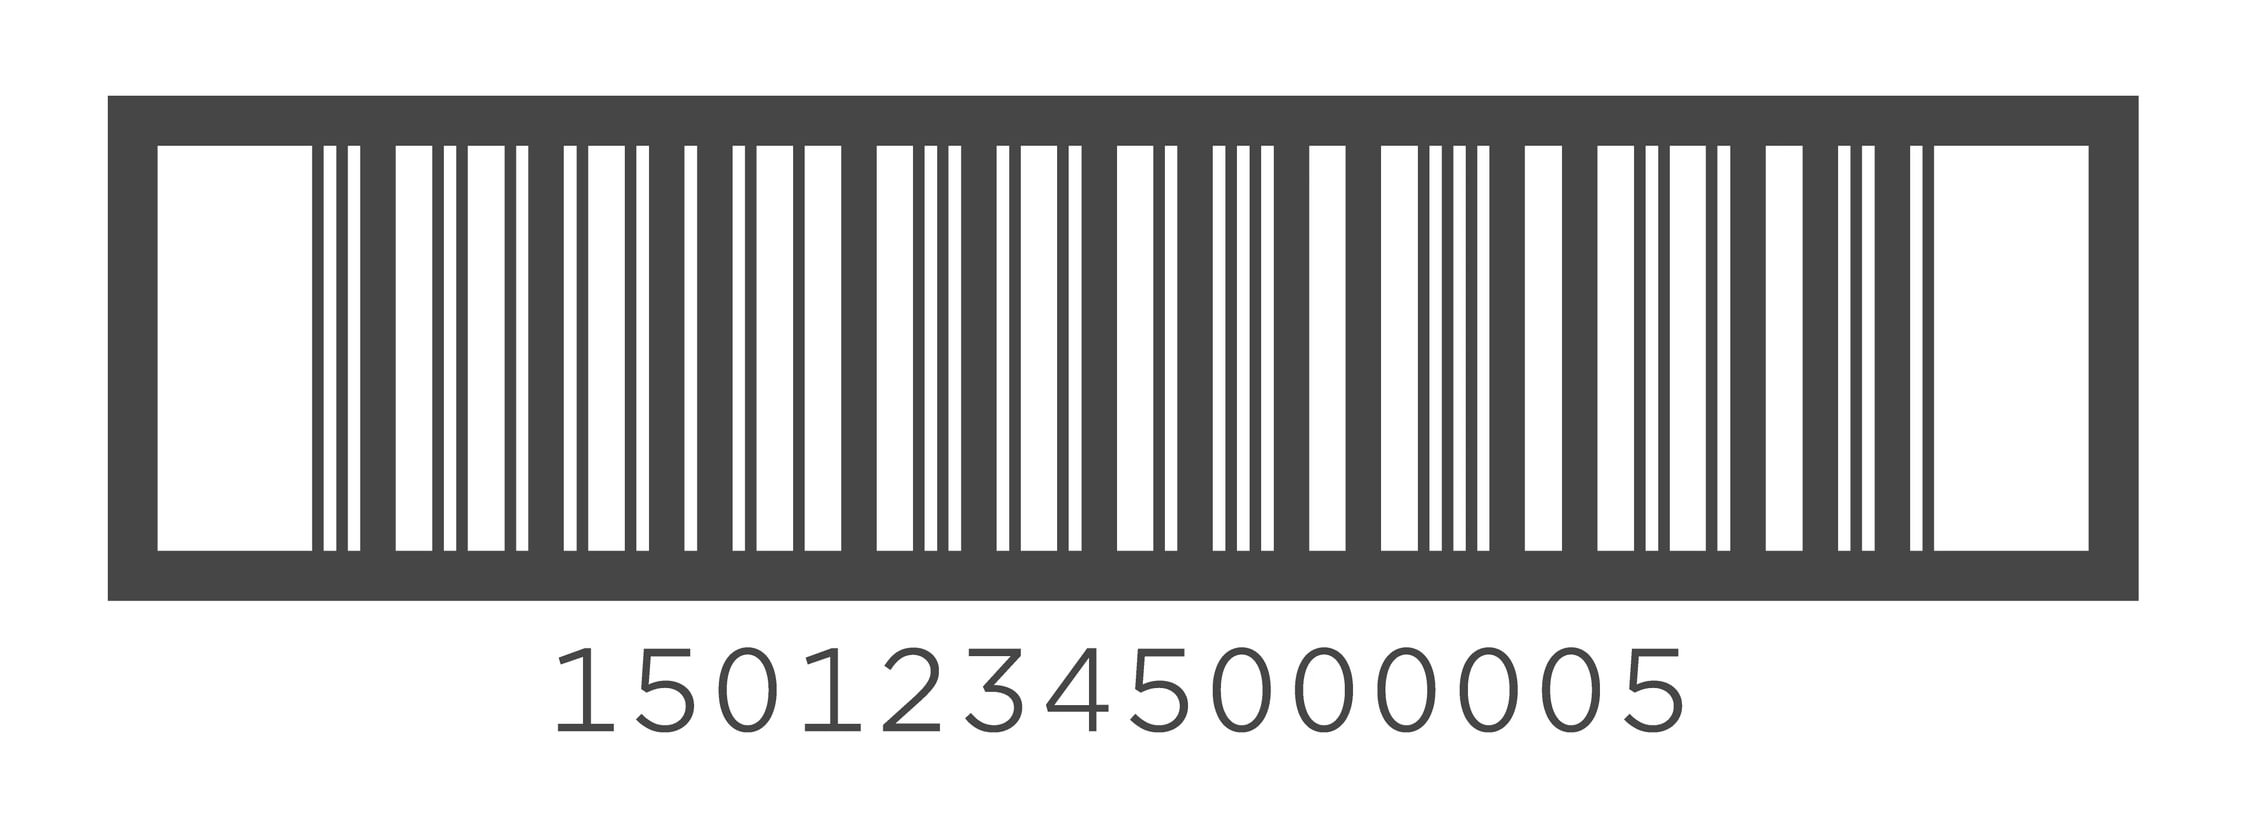 Image of ITF-14 barcode